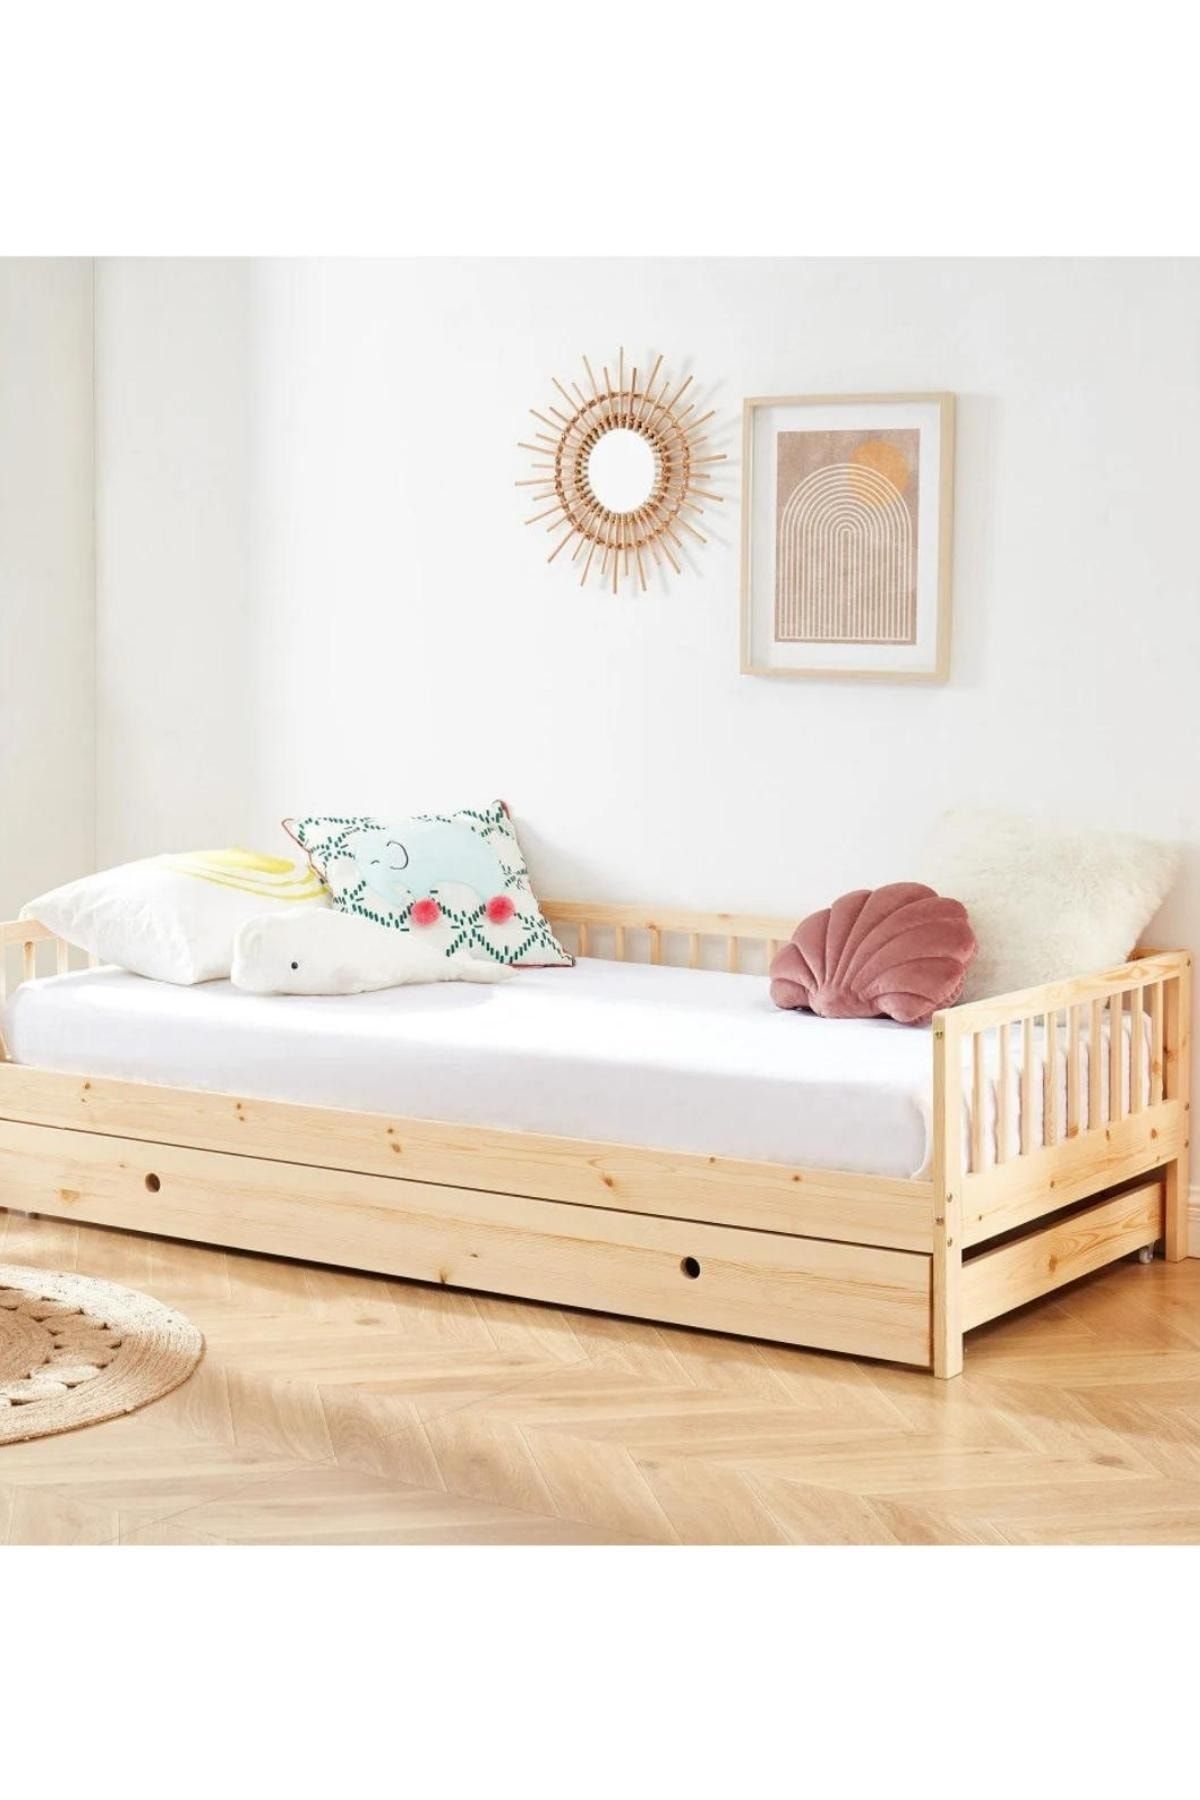 Alyones Çekmeceli Montessori Yer Yatağı, Çocuk Beşiği, Çocuk Yatağı Montessori Platform Yatağı